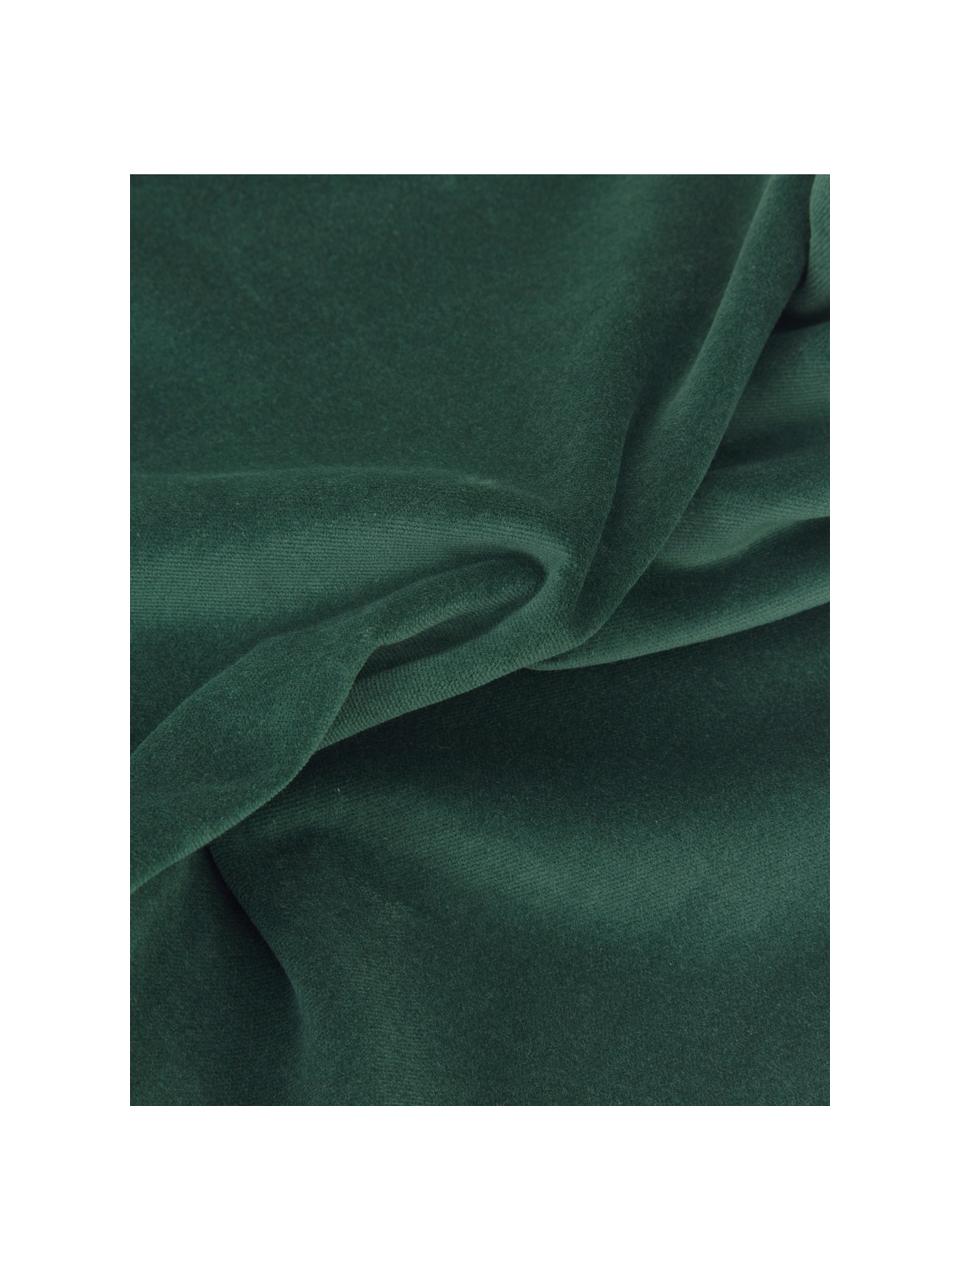 Funda de cojín de terciopelo Dana, 100% terciopelo de algodón, Verde esmeralda, An 50 x L 50 cm